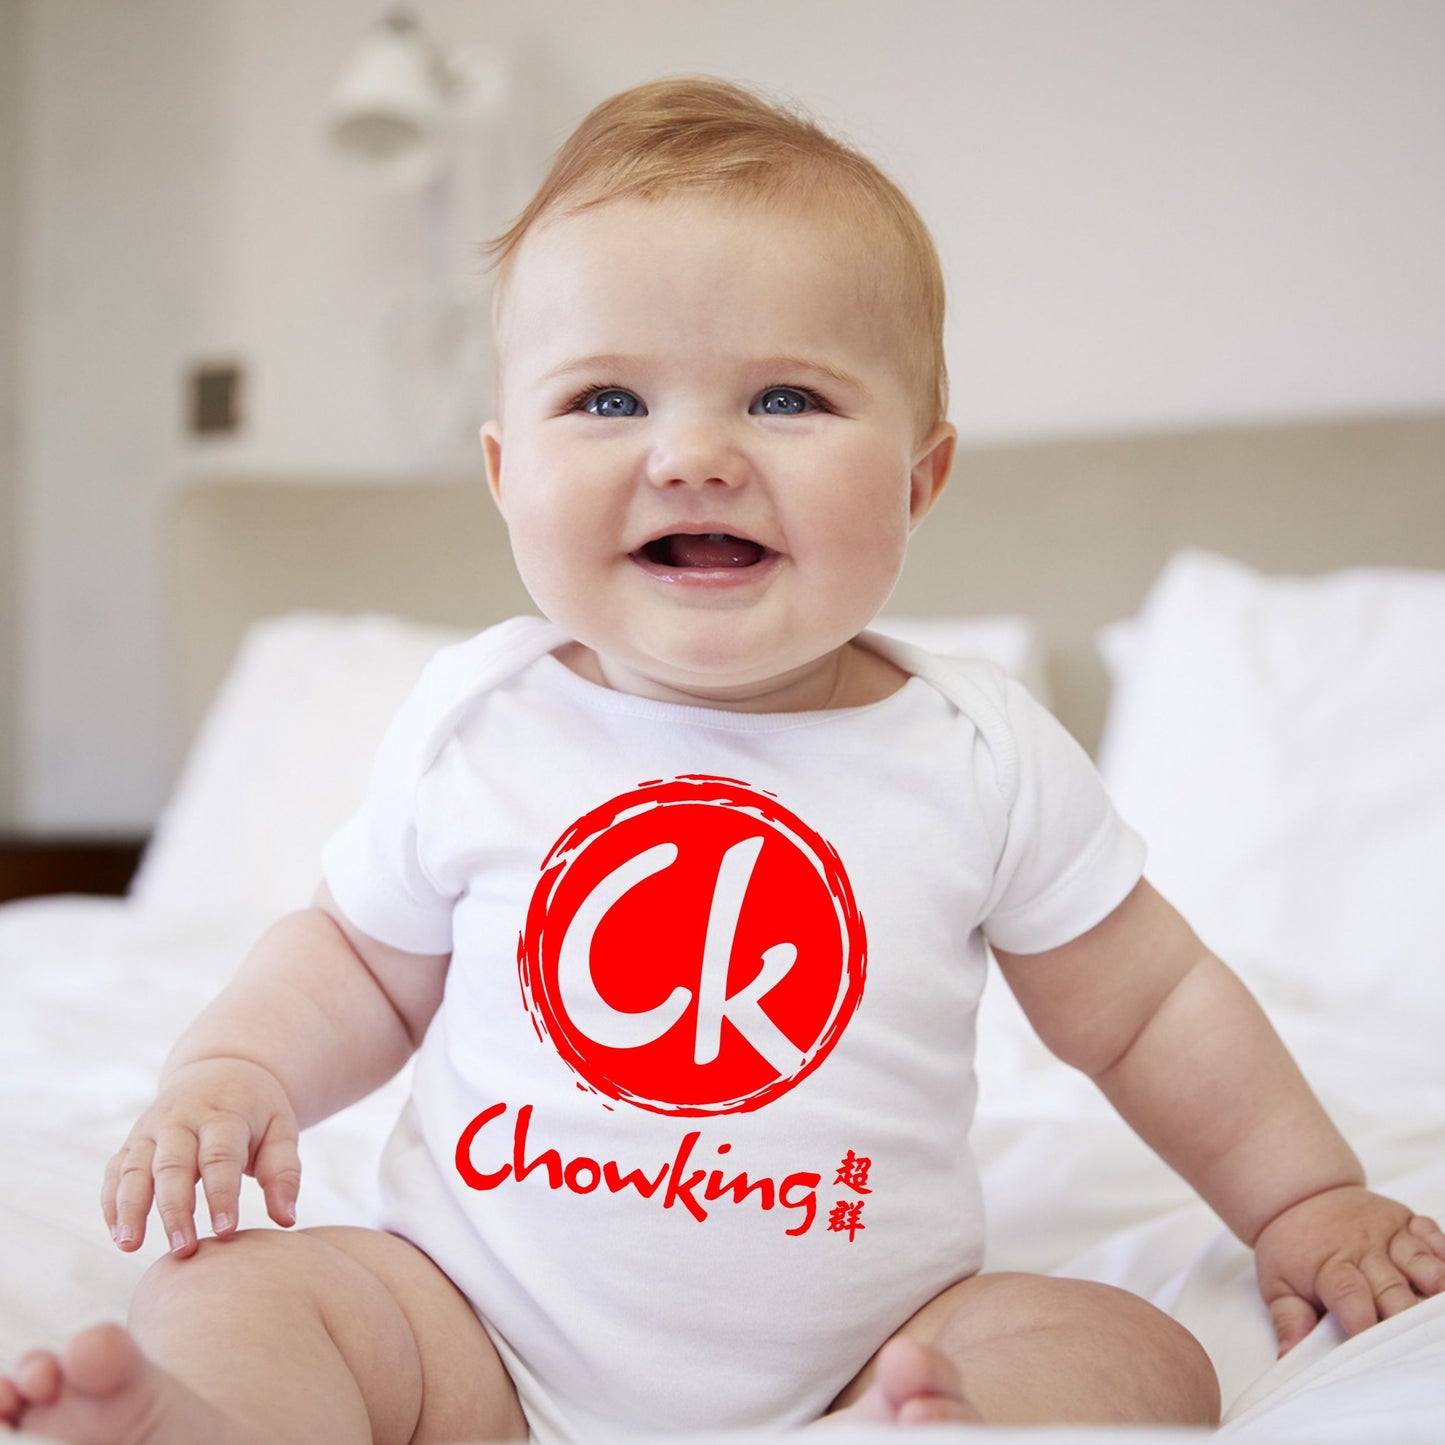 Baby Onesies Logo - C'K